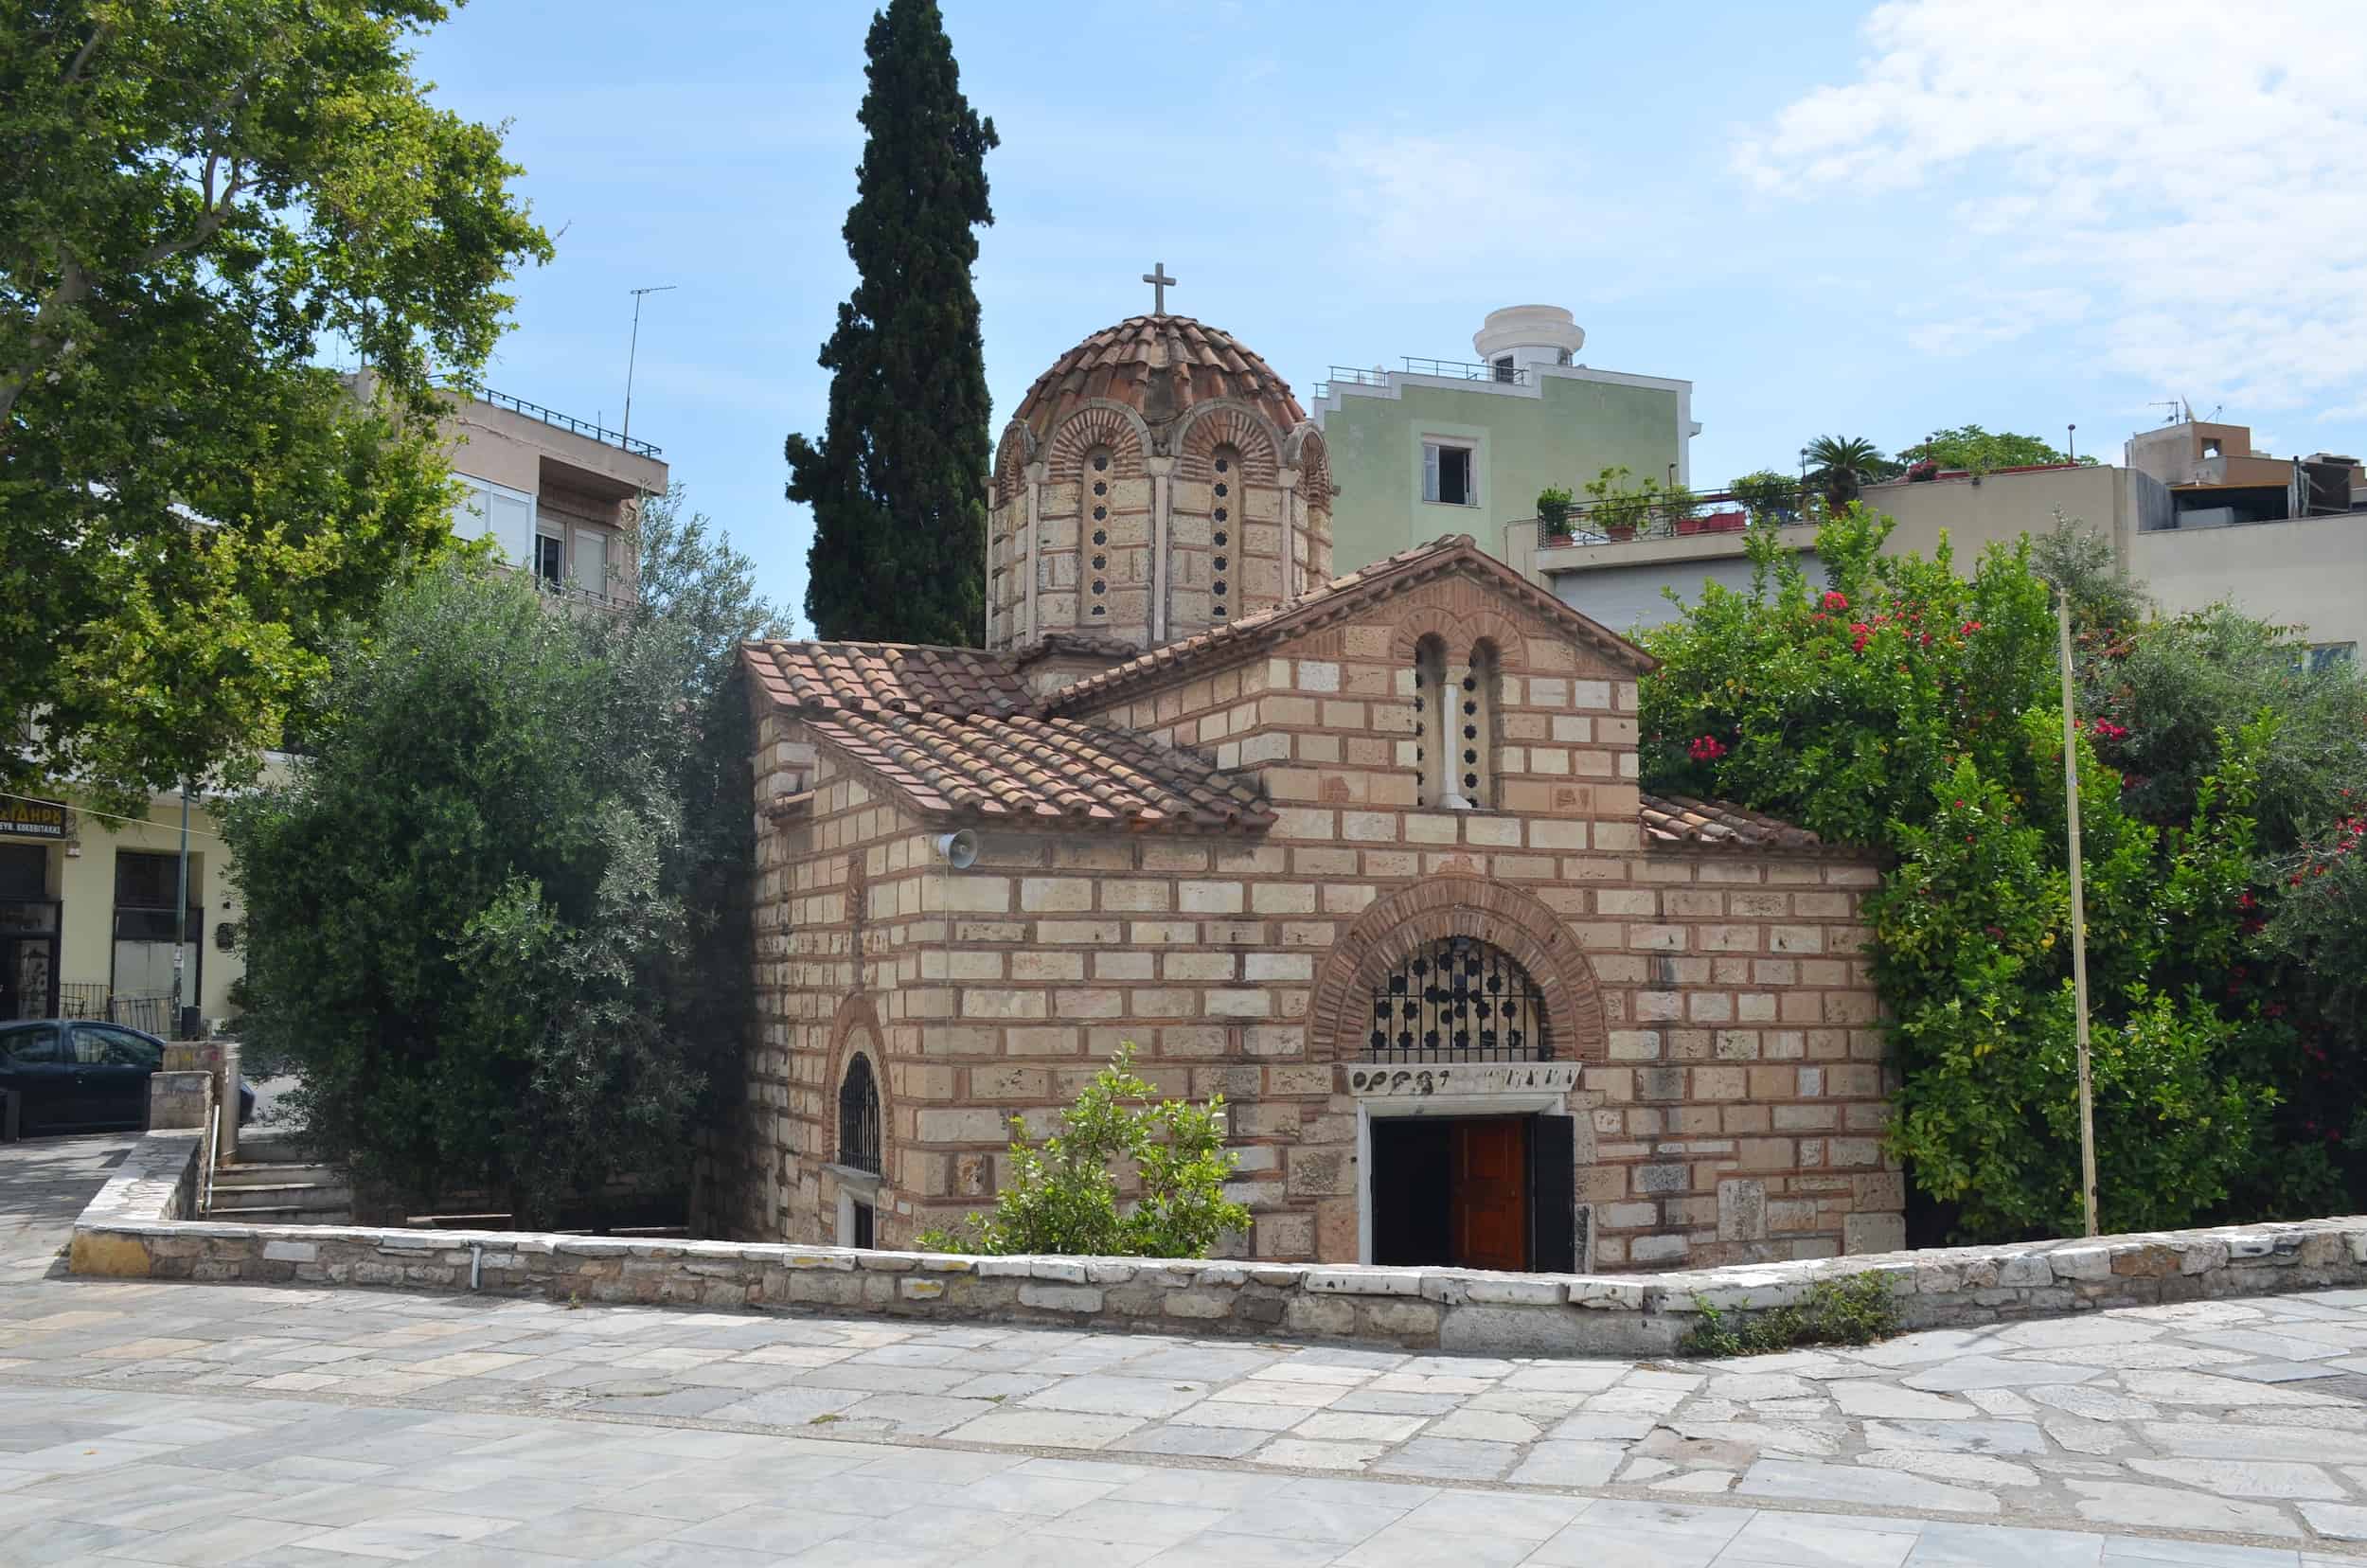 Agioi Asomatoi in Kerameikos, Athens, Greece